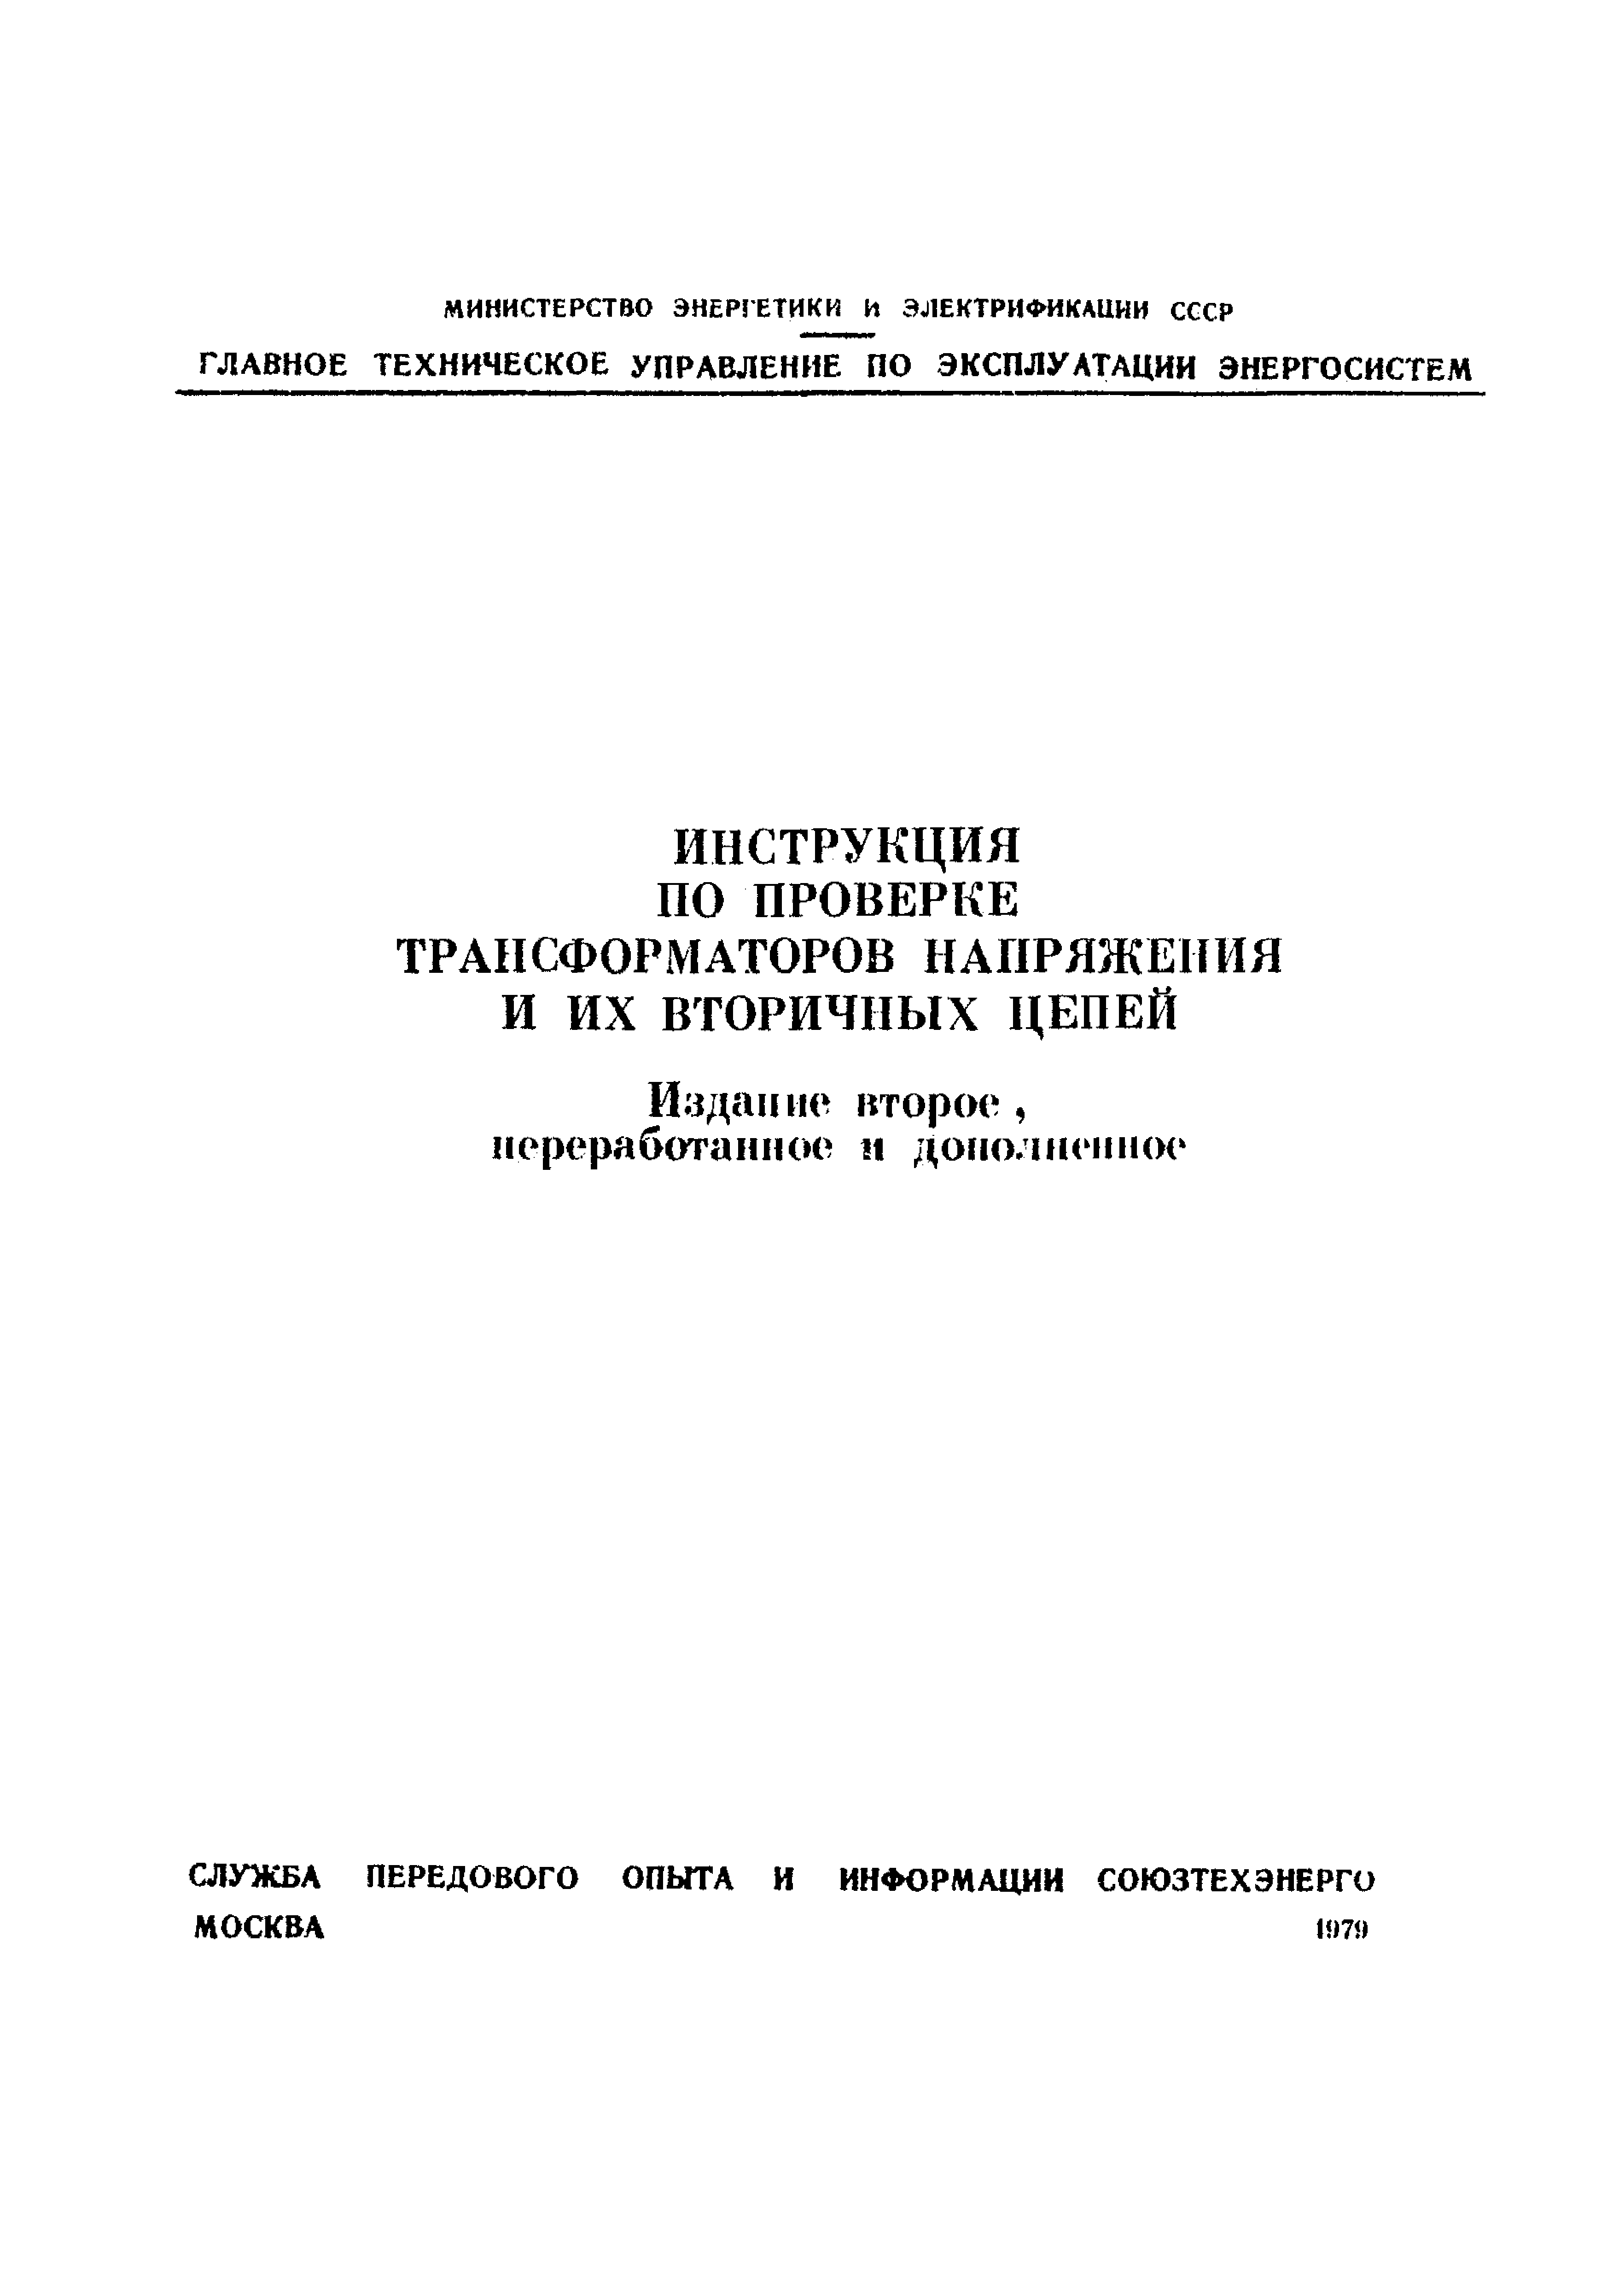 Скачать РД 34.35.305-79 Инструкция По Проверке Трансформаторов.